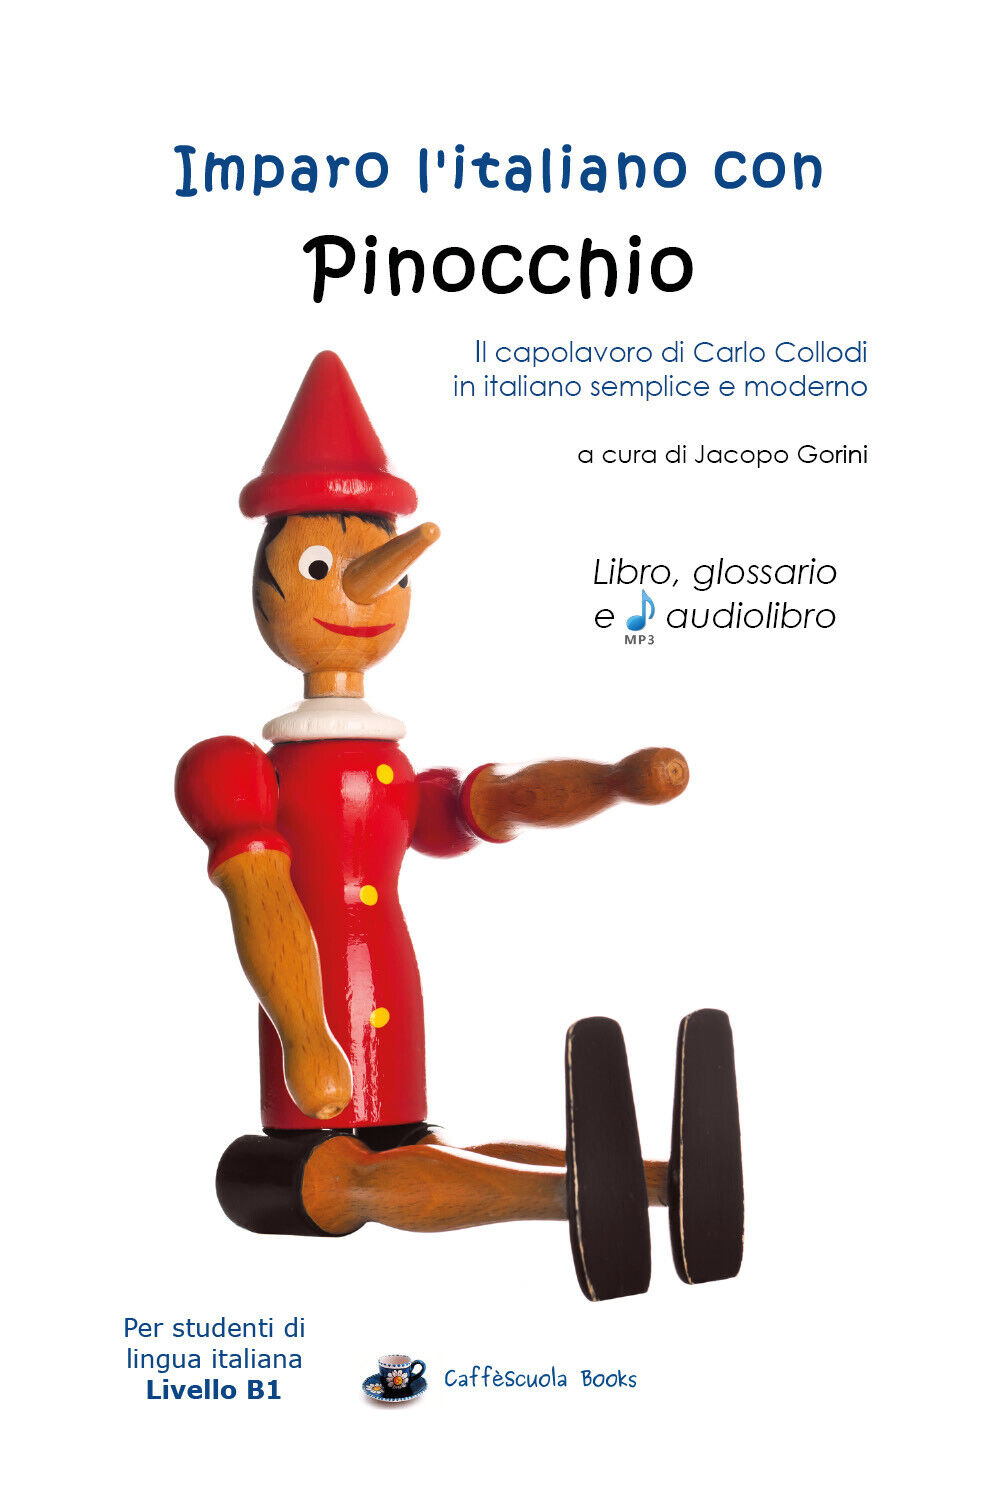 Imparo L'italiano con Pinocchio - Libro, glossario e audiolibro libro usato